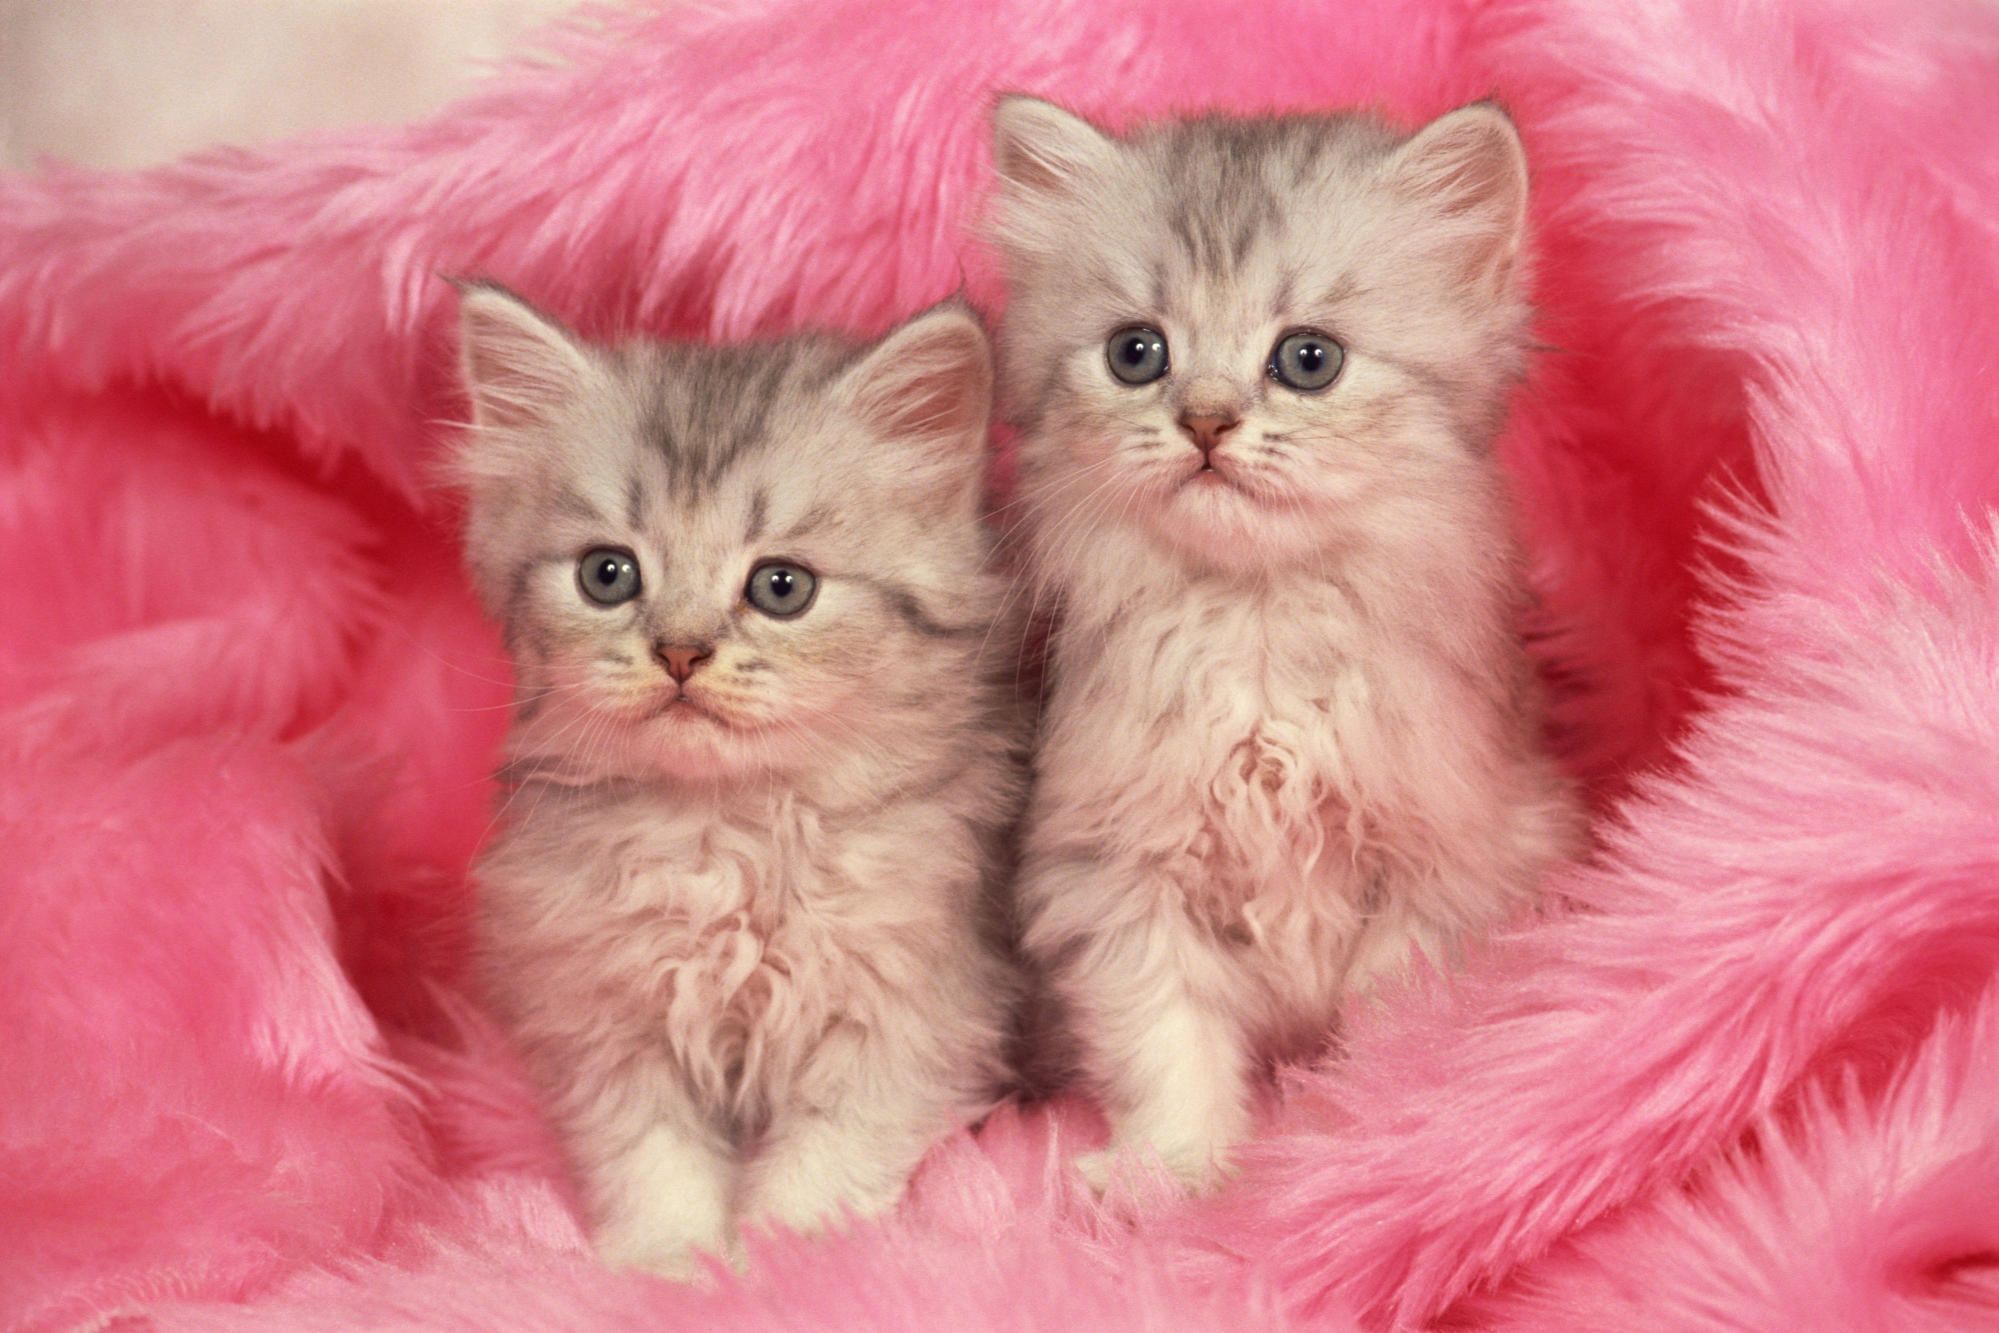 Hình nền mèo con màu hồng tuyệt đẹp đang chờ bạn trong bức ảnh này. Hãy chọn nó làm hình nền điện thoại của bạn và cảm nhận sự dễ thương và yêu kiều của chú mèo con màu hồng này.